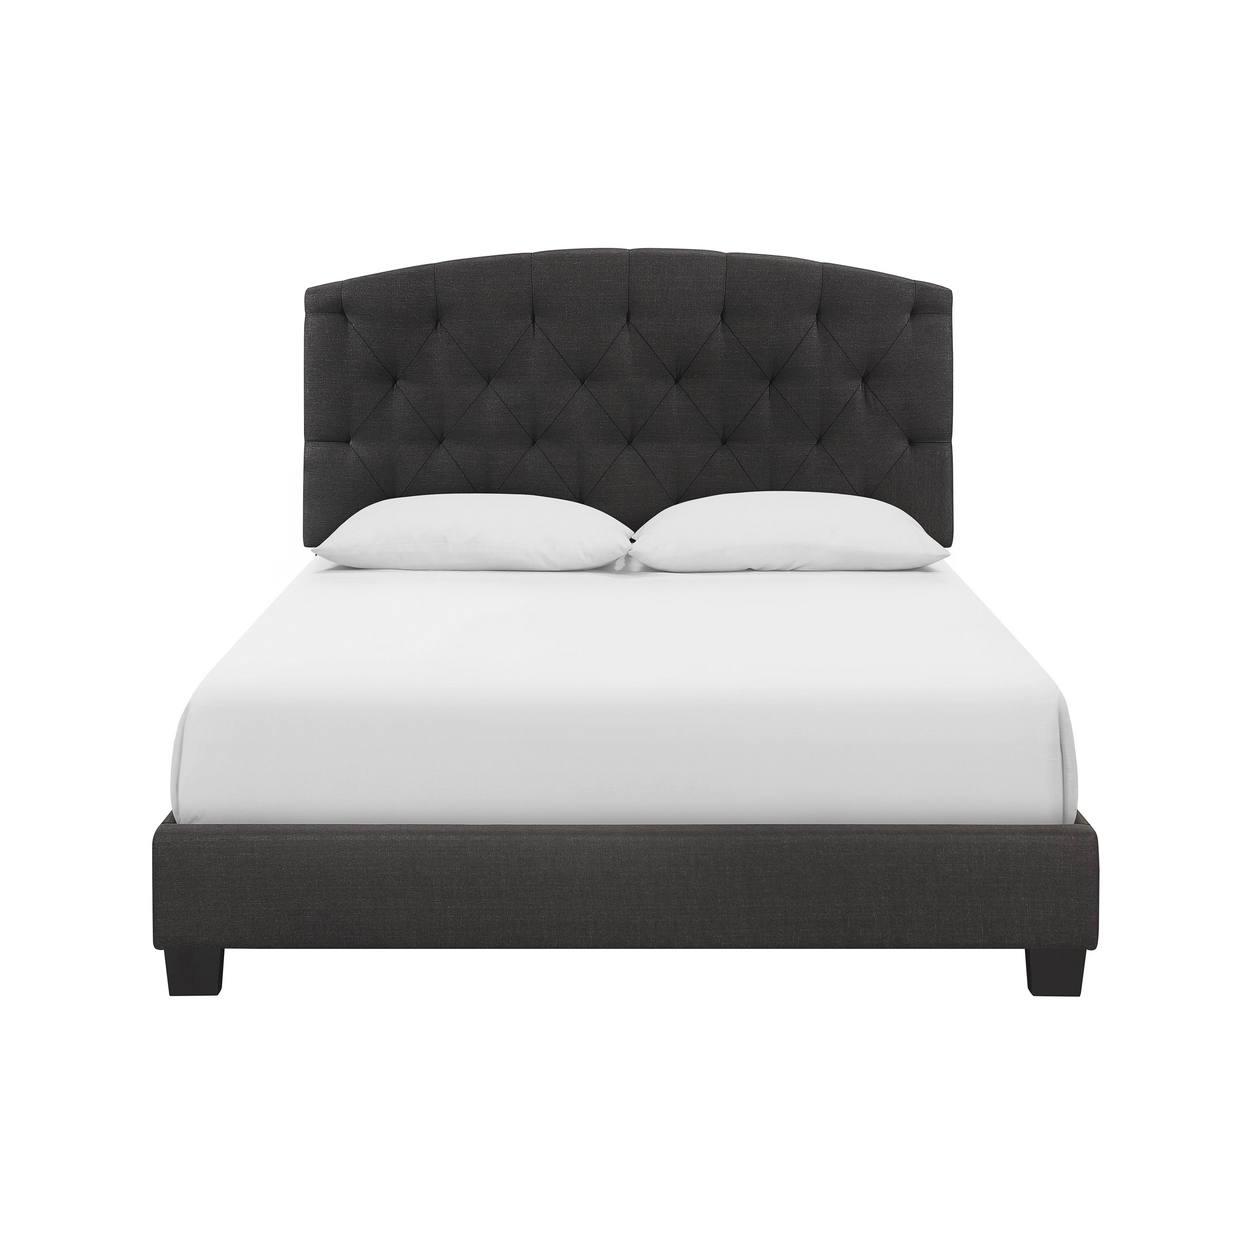 Dane Full Size Bed, Fully Upholstered, Tufted Curved Headboard, Dark Gray- Saltoro Sherpi